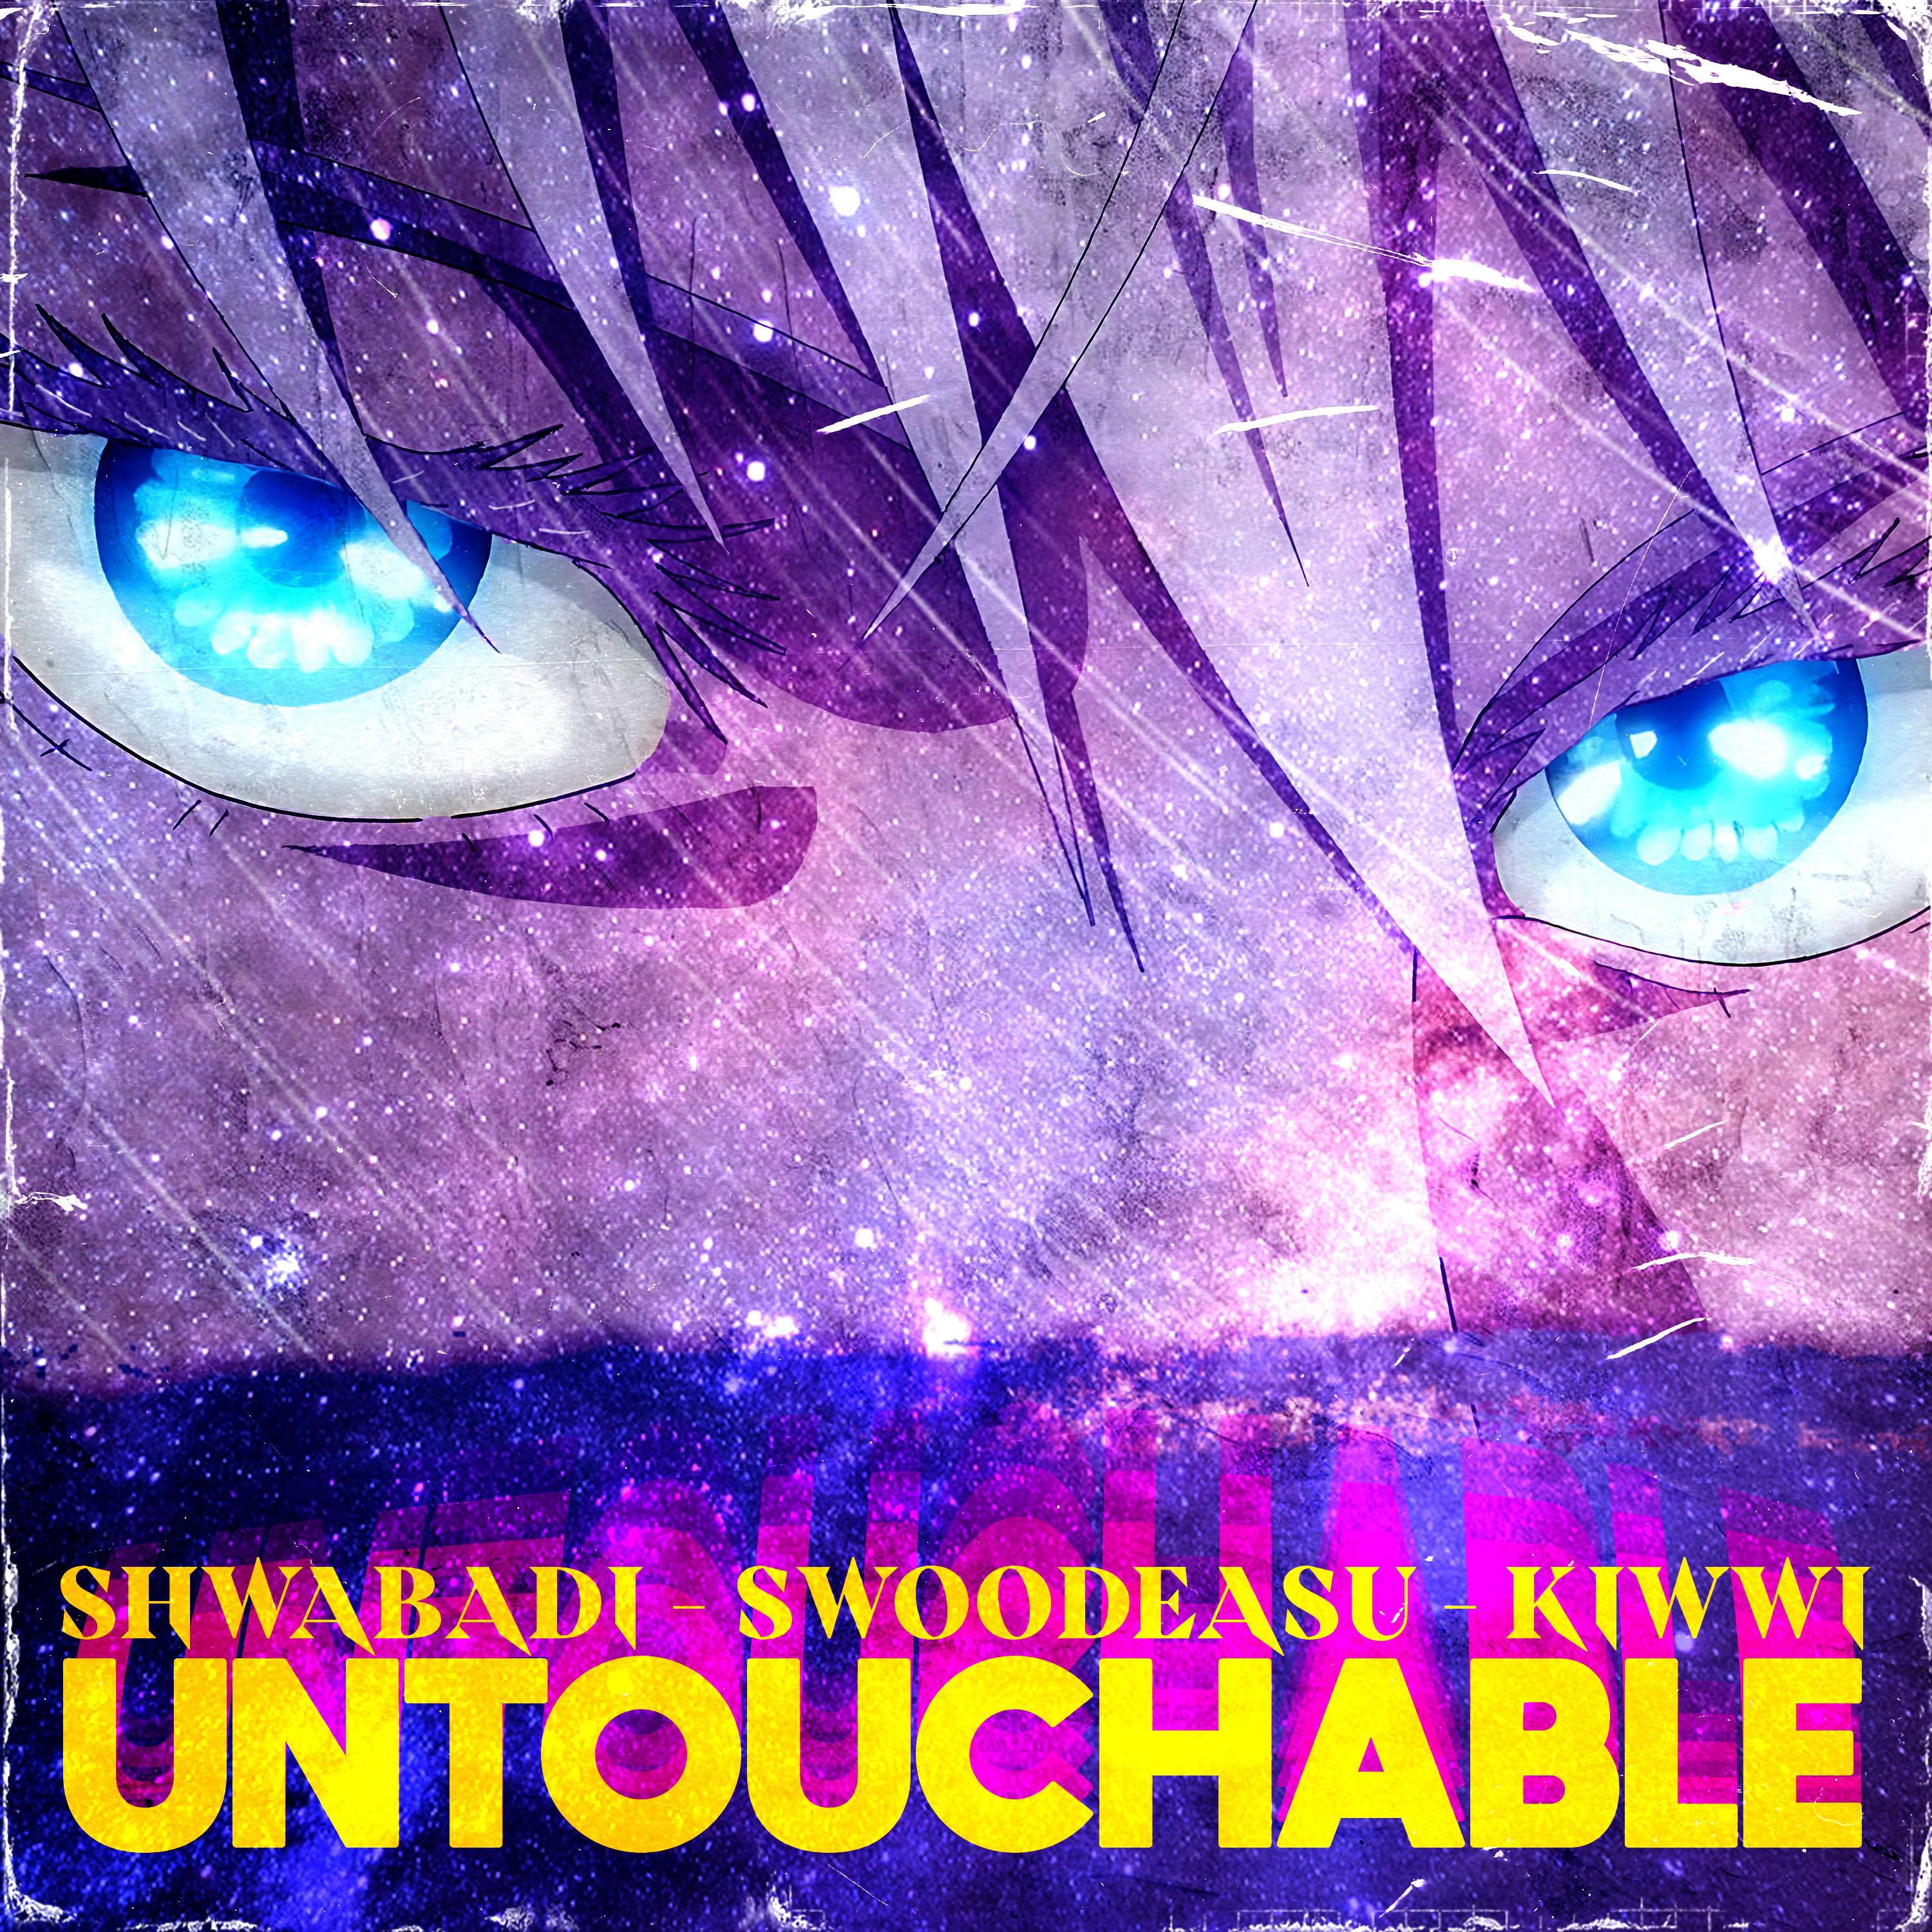 Shwabadi - Untouchable (Gojo) (feat. Swoodeasu & Kiwwi)